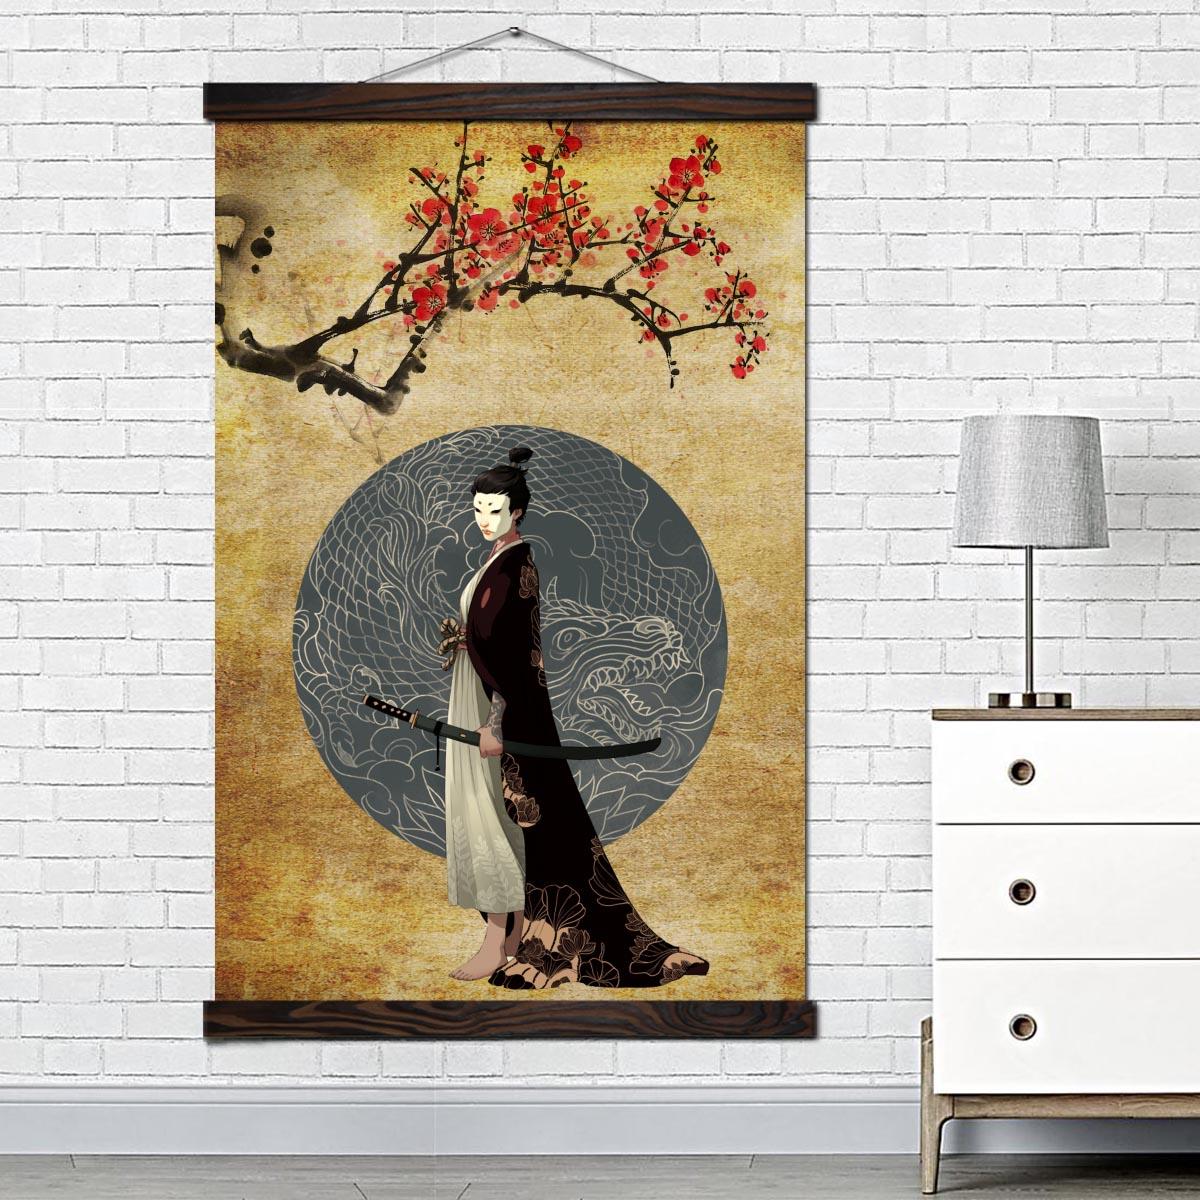 Bild geisha under ett körsbärsträd Bild japansk bild bild värld